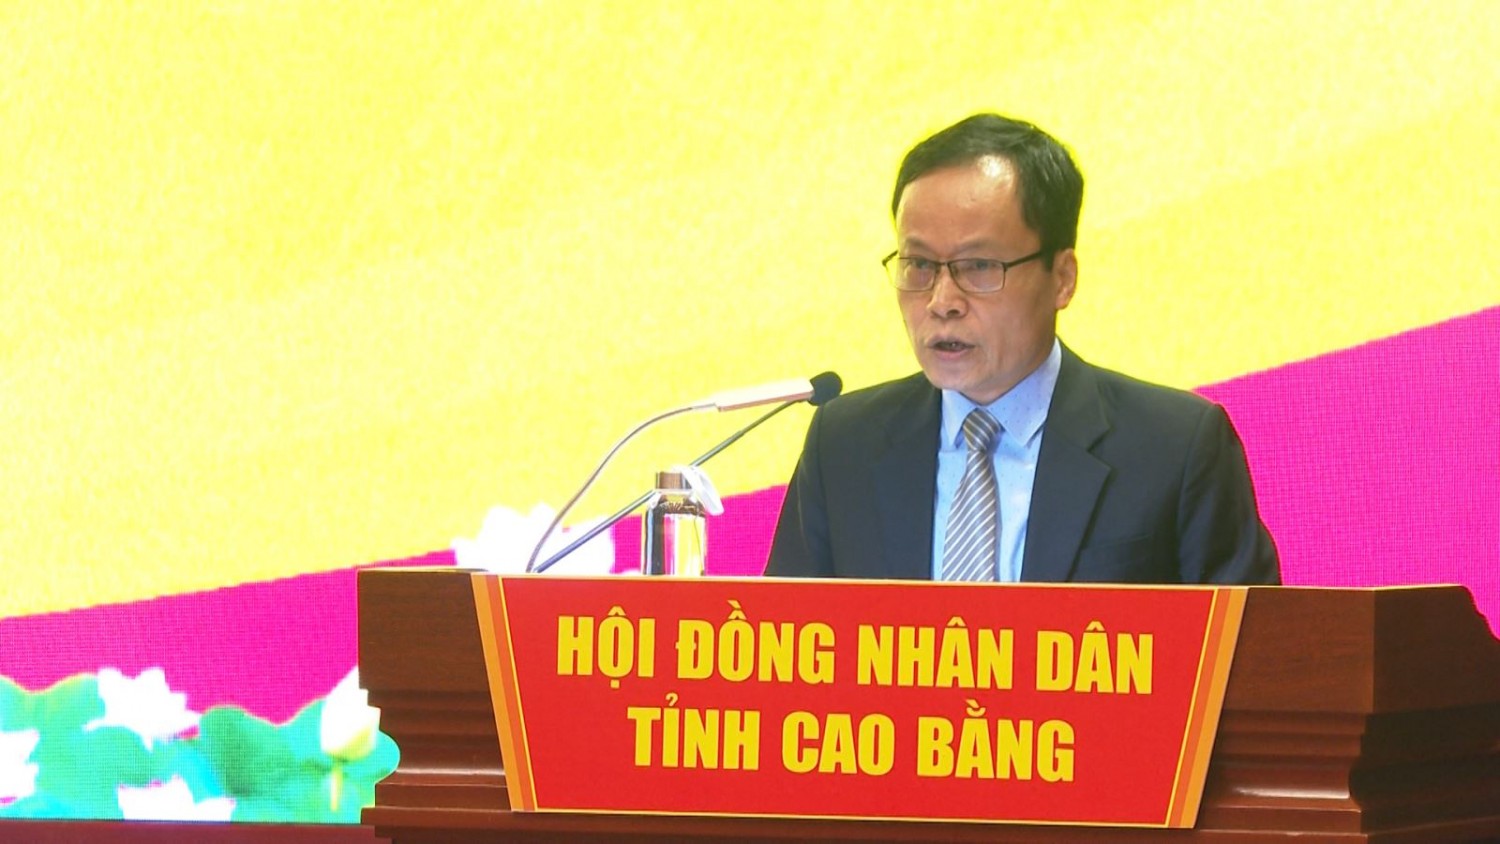 Đồng chí Nông Thanh Tùng, Phó Chủ tịch HĐND tỉnh phát biểu khai mạc hội nghị.